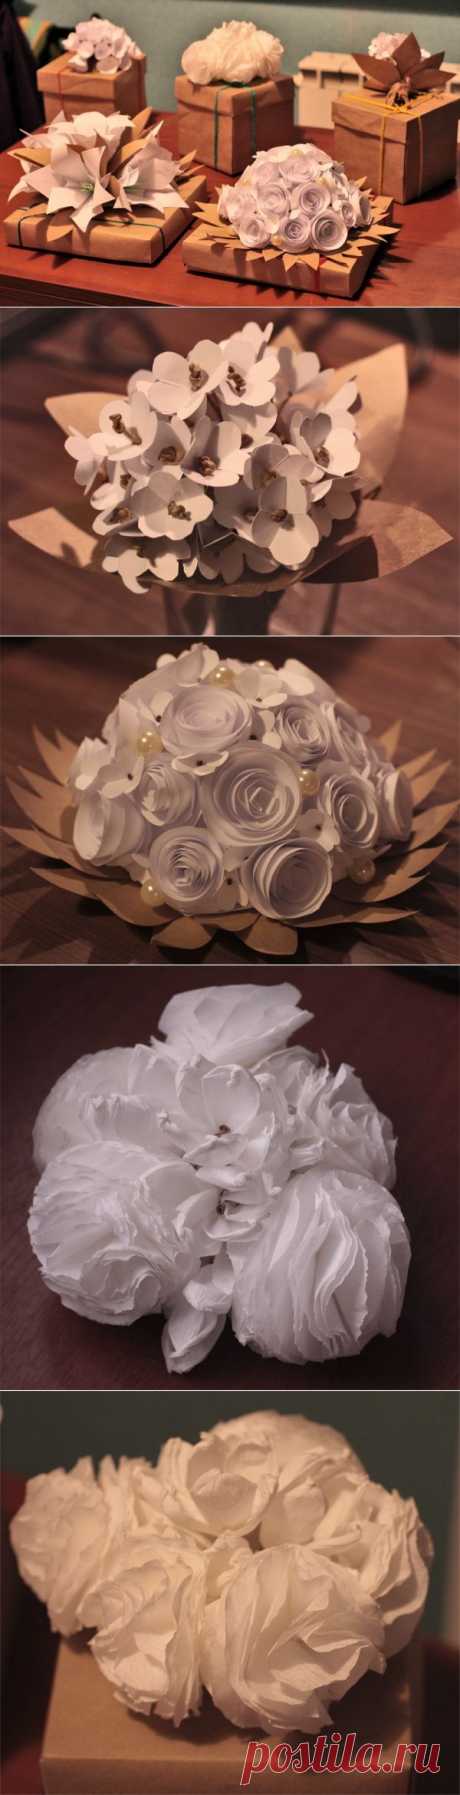 Стильные бумажные цветы как украшение подарков — Рукоделие